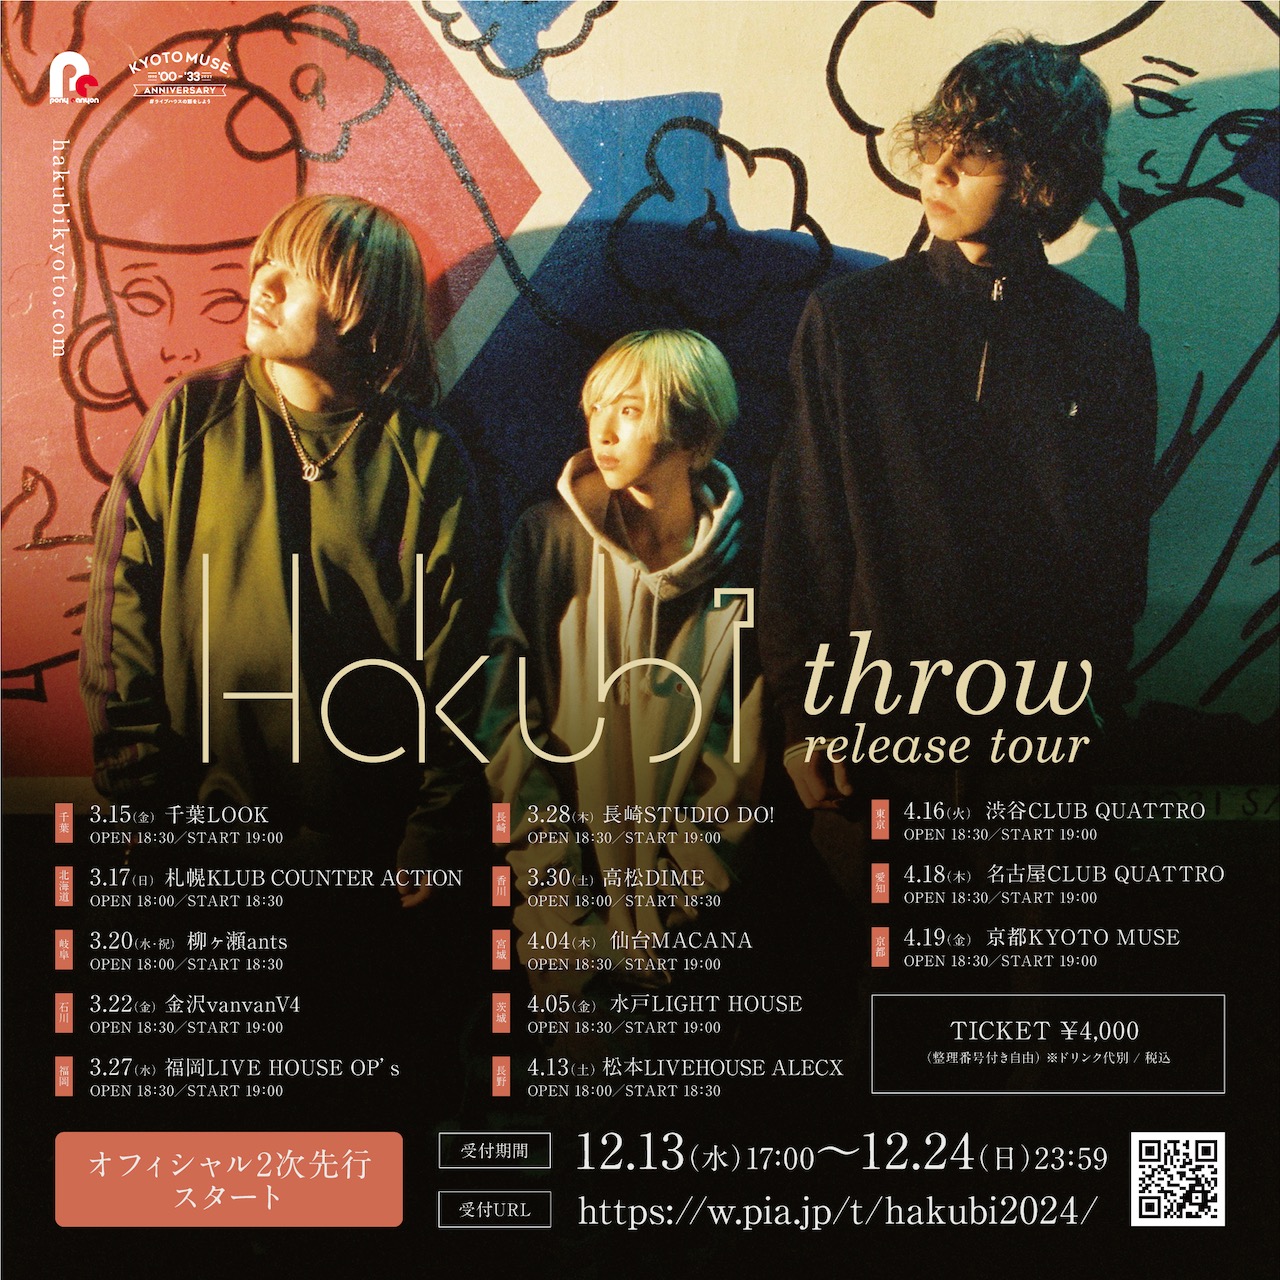 Hakubi throw release tour